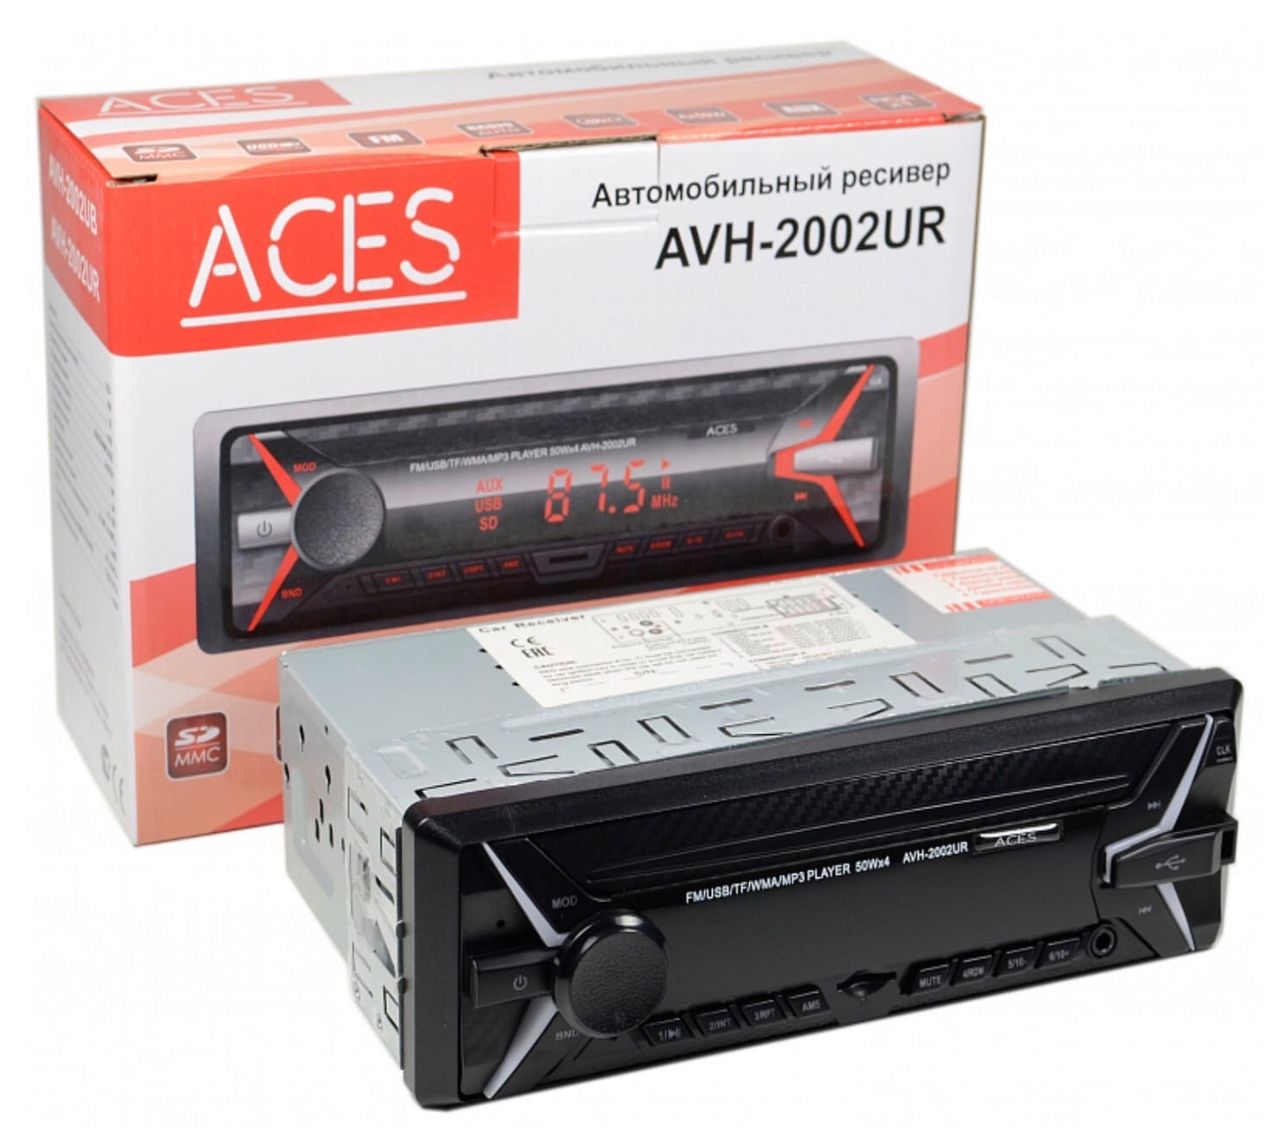 USB - ресивер Aces AVH-2002UR - фото